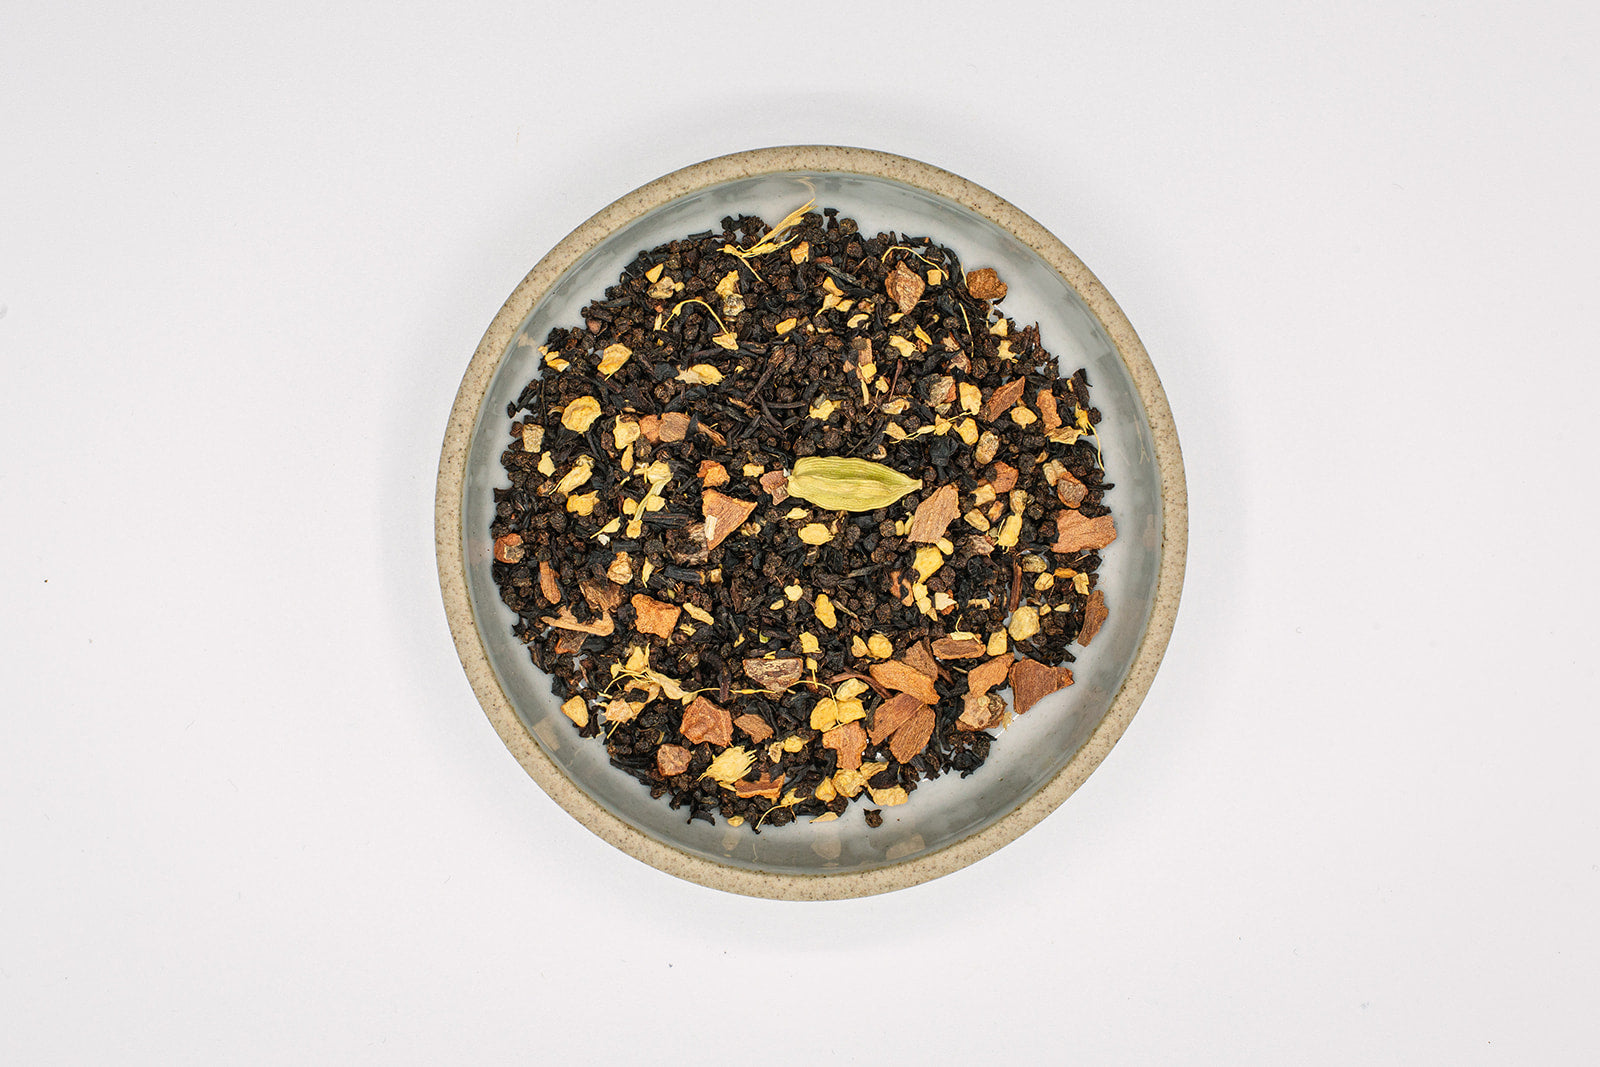 black masala chai loose leaf caffeinated blend / 45g / 1.5 oz. / 20 cu –  Biophilia Herbals